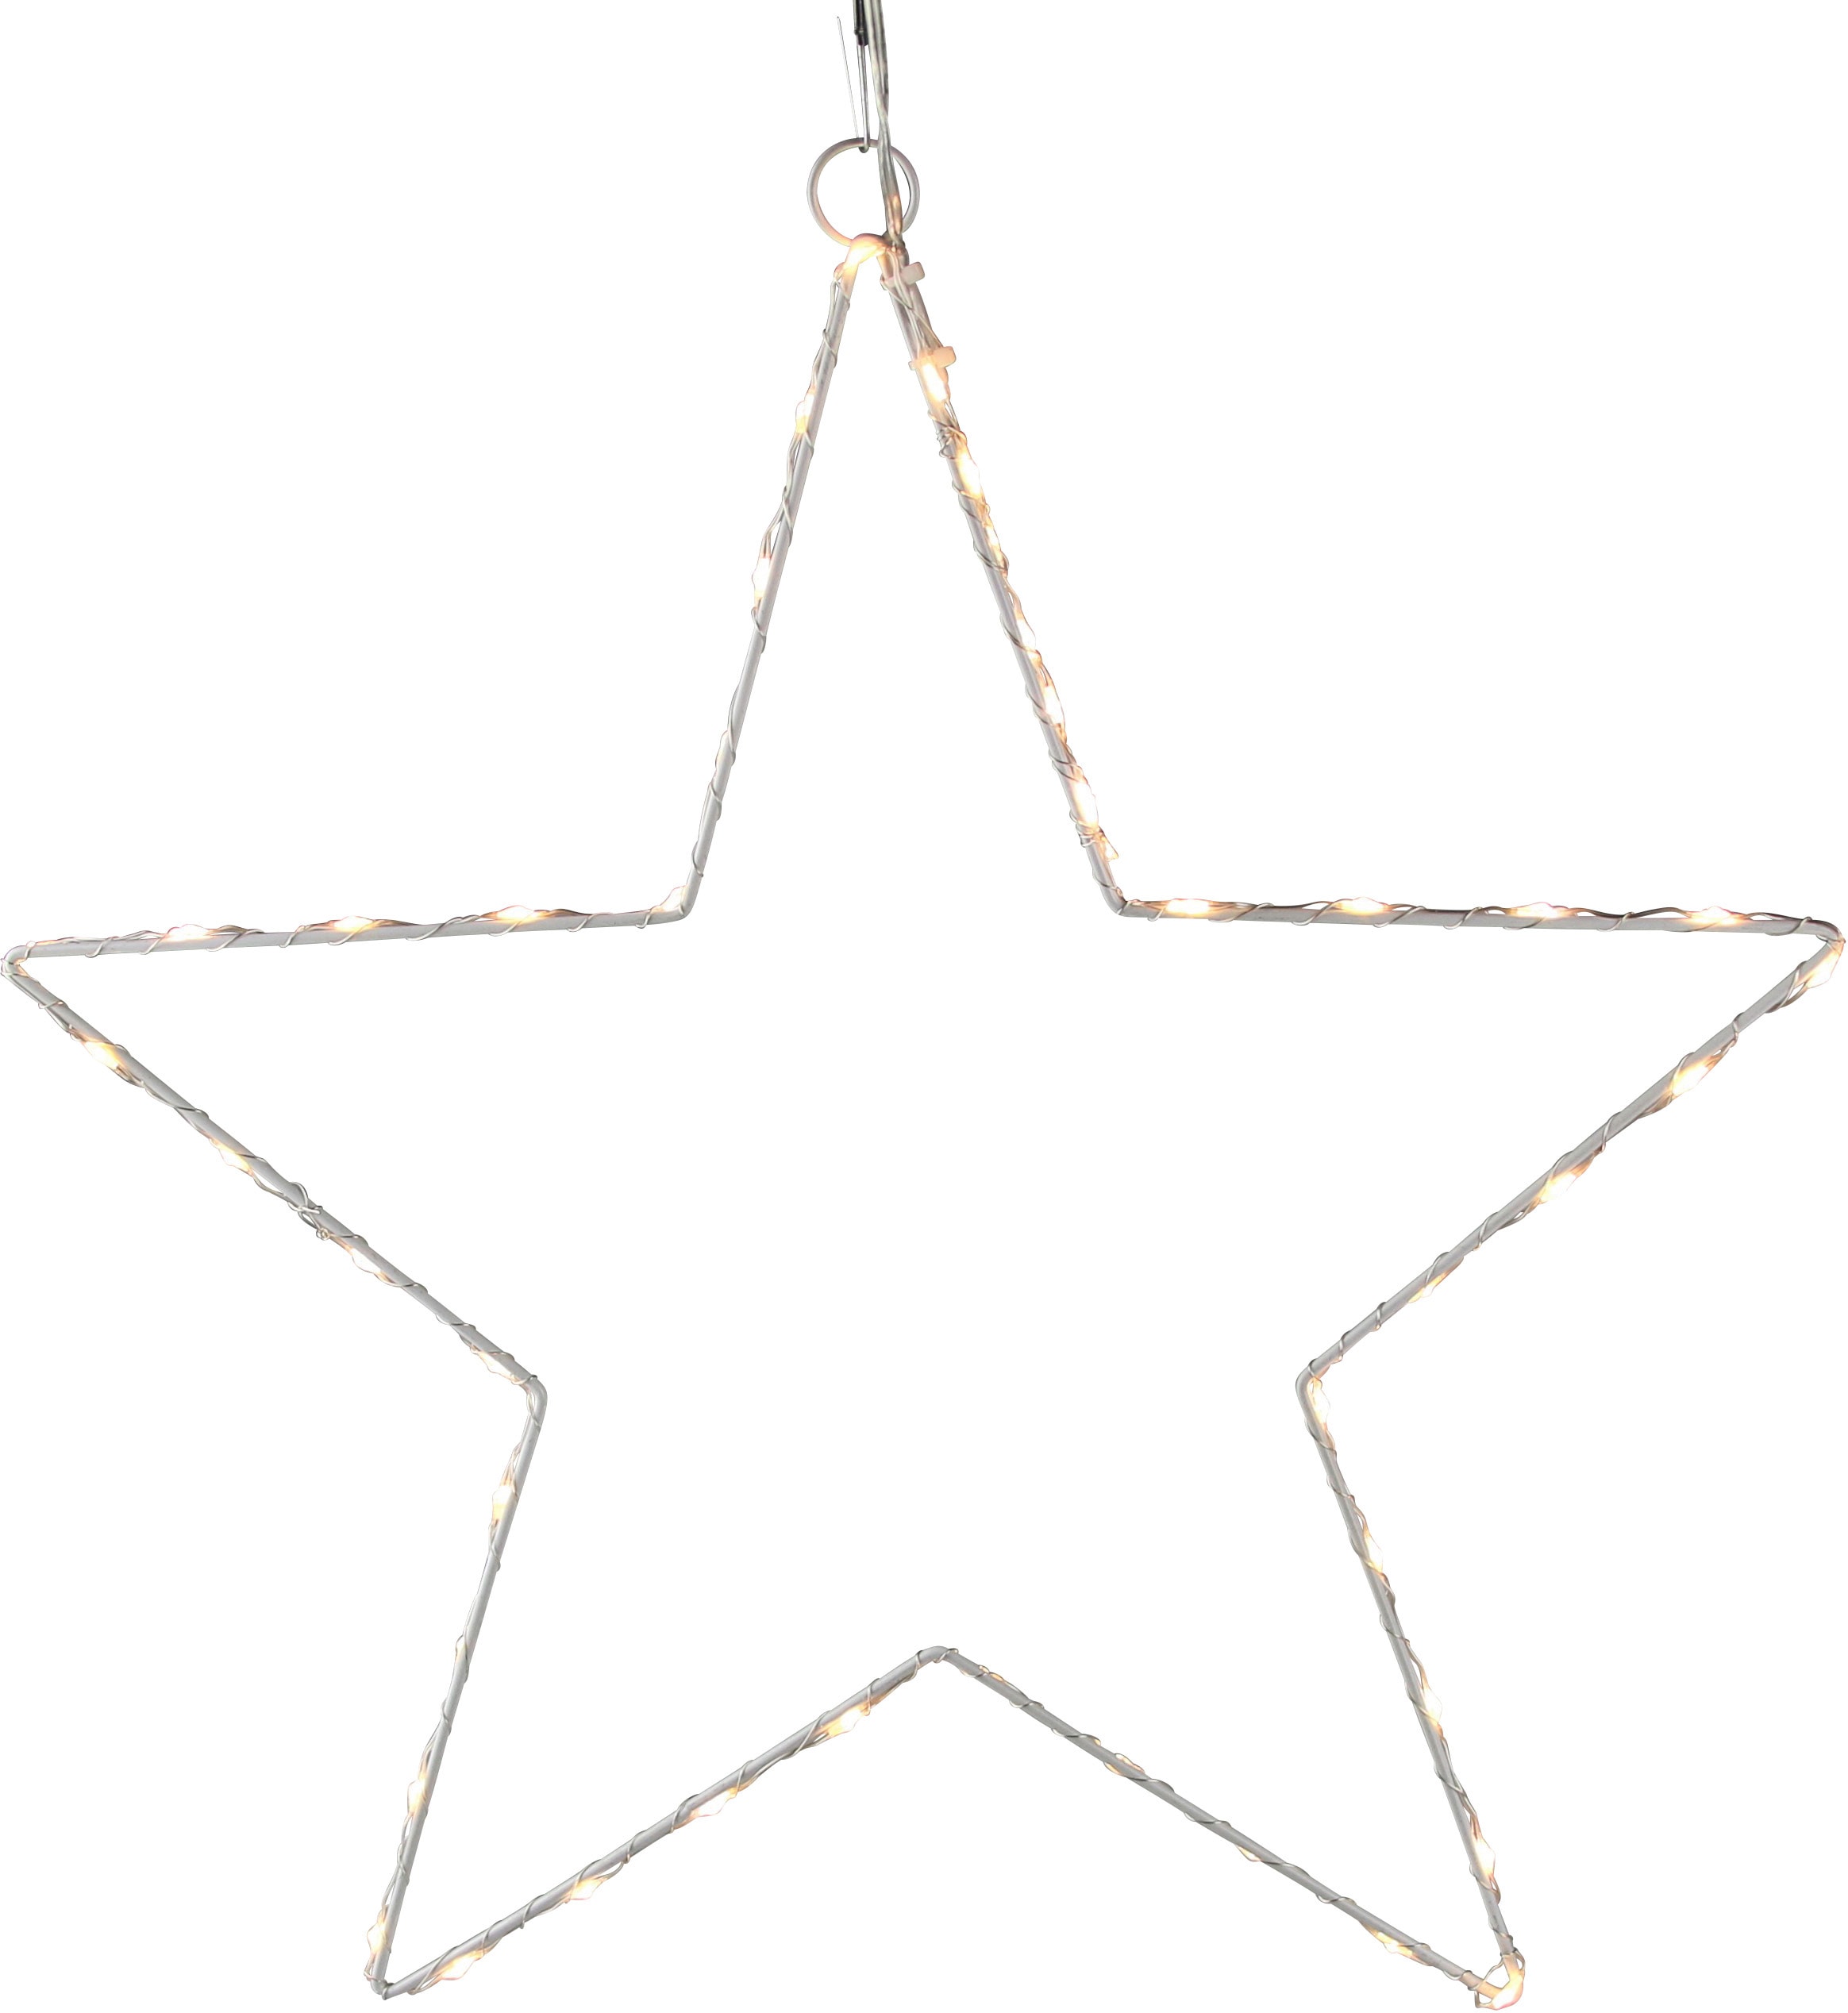 LED Stern, Weihnachtsstern aus Draht, mit Öse zum Aufhängen,Weihnachtsdeko aussen